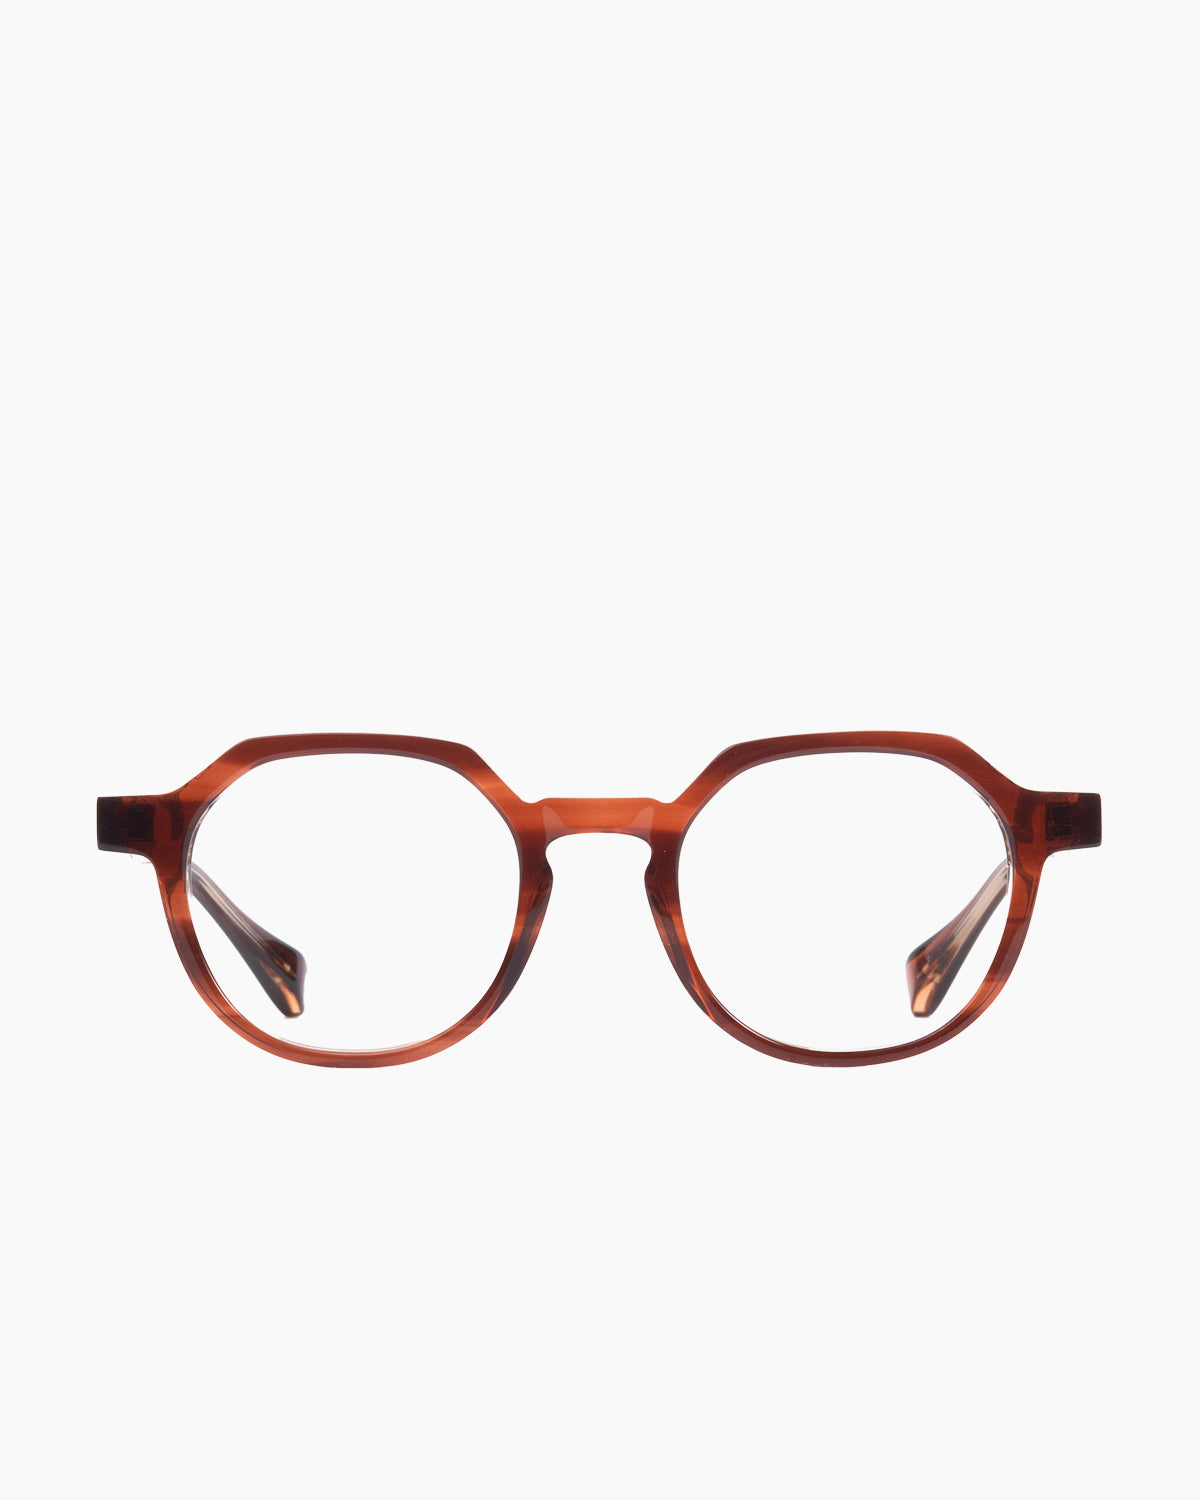 Francois Pinton - Haussmann9 - Mm | glasses bar:  Marie-Sophie Dion